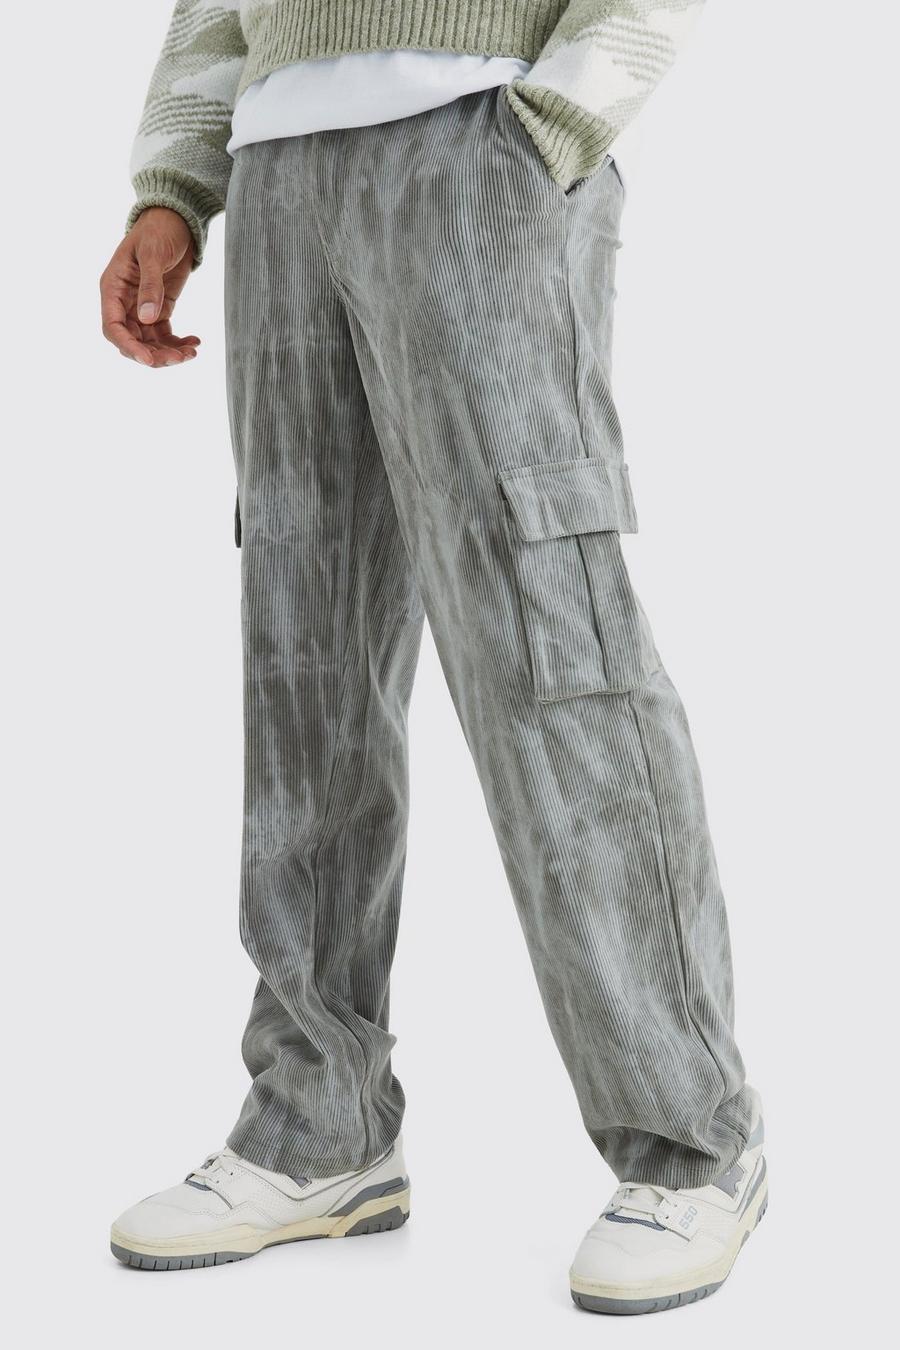 Lockere Batik Cord-Cargohose, Grey grau